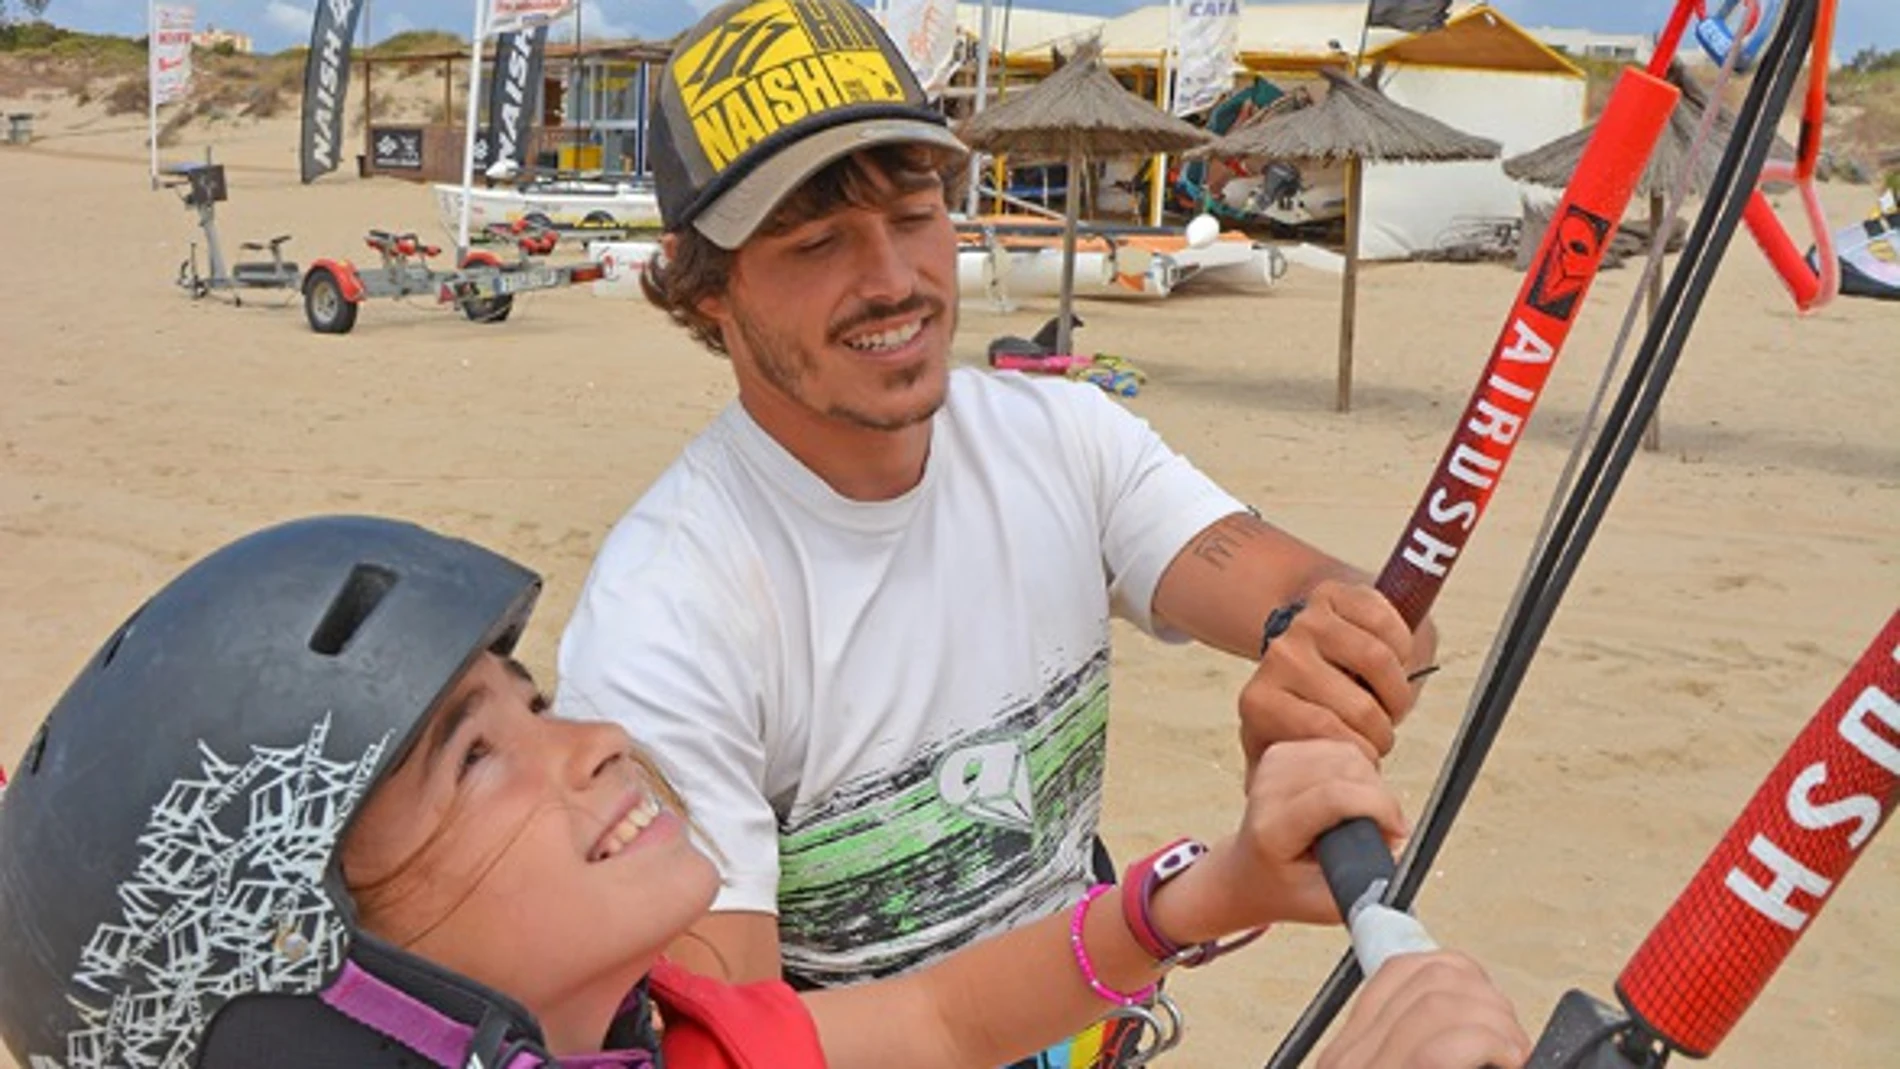 El kite surf se ha convertido en uno de los deportes reyes para niños en las costas españolas